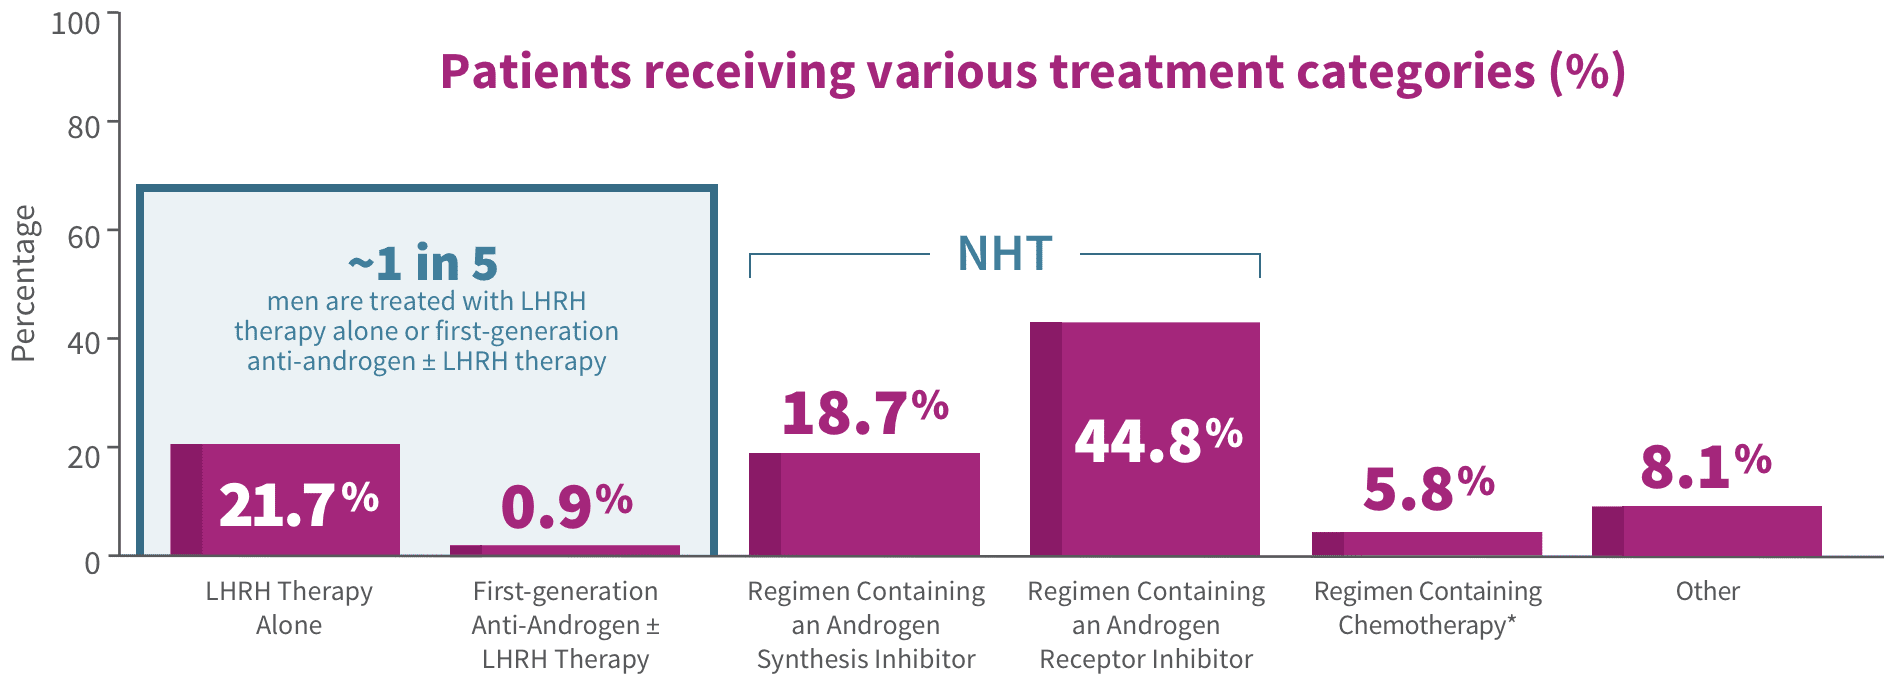 Patients receiving various treatment categories (%)